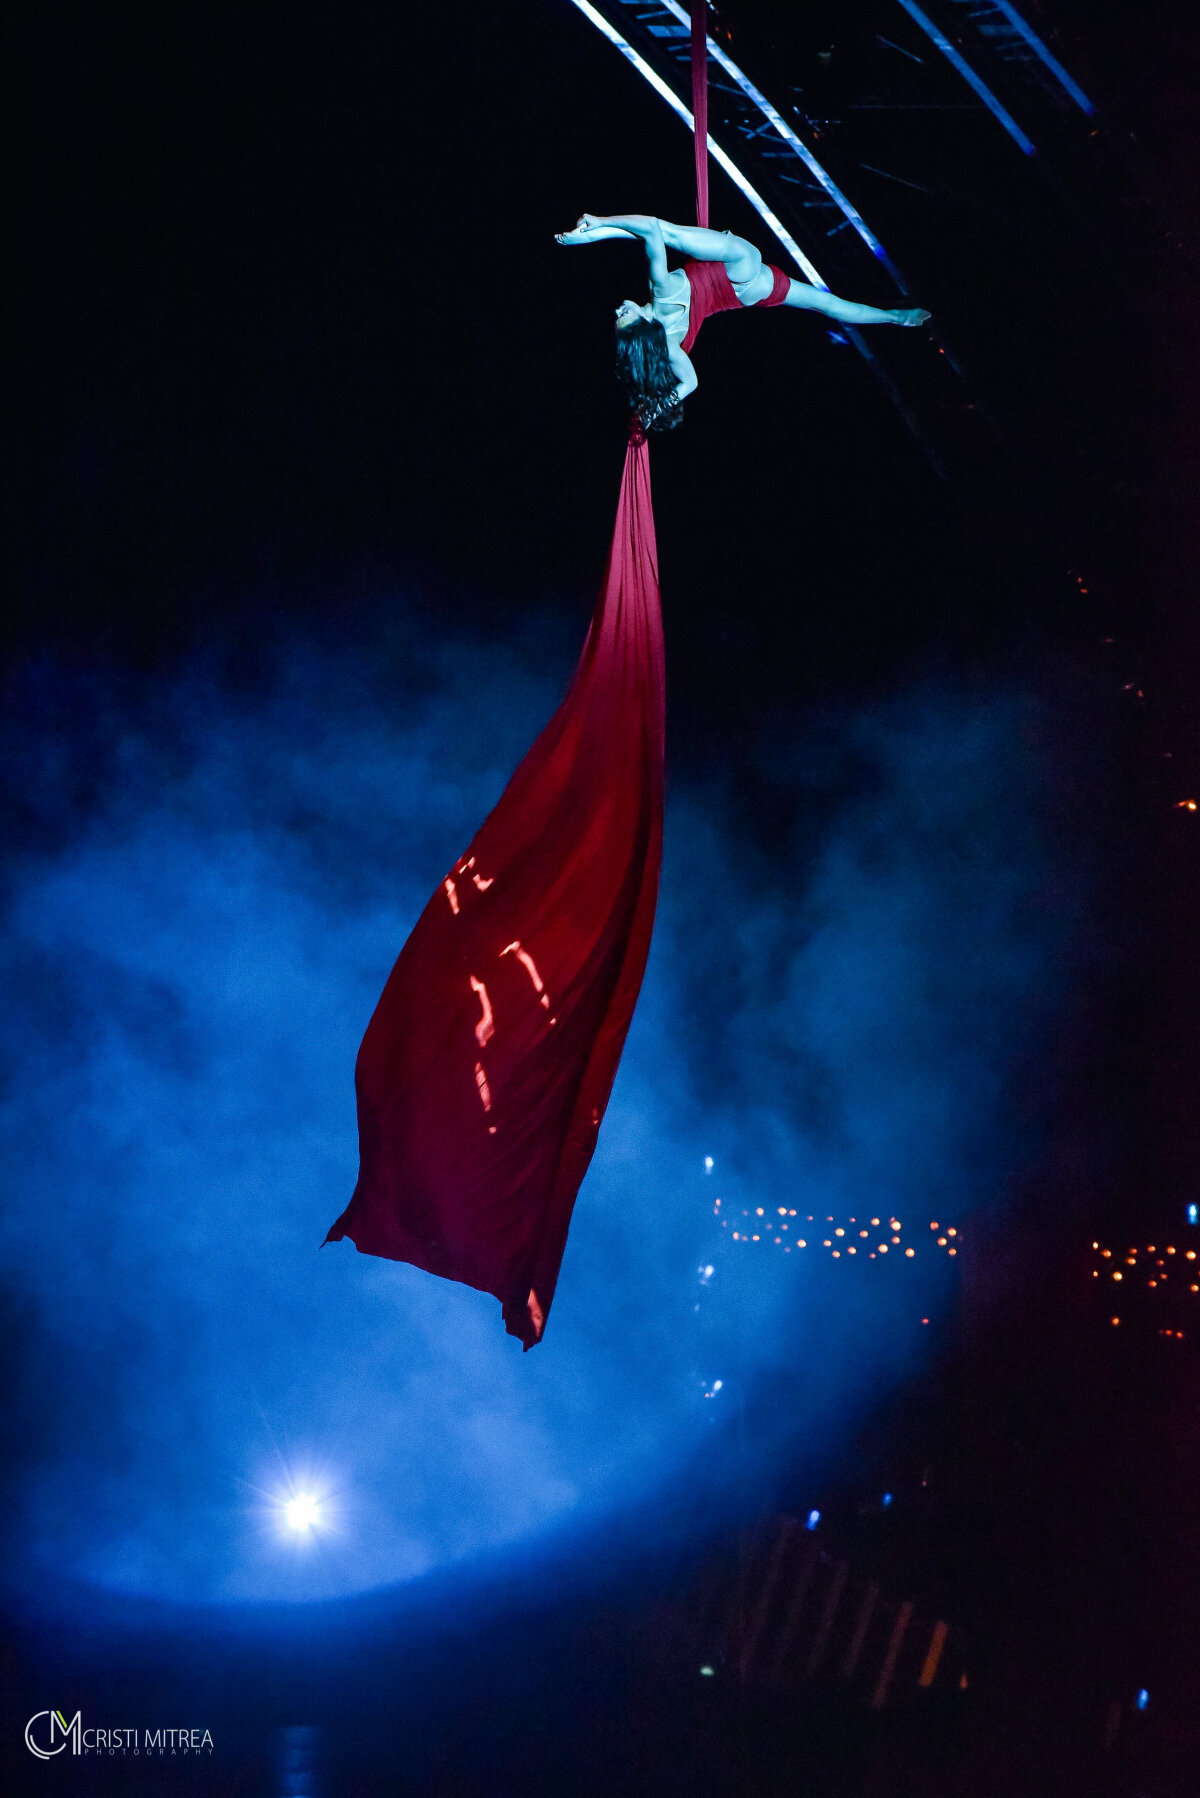 GALERIE FOTO Emoţii, momente tensionate, acrobaţii senzaţionale şi glume pentru toate gusturile » Cirque du Soleil e la Bucureşti!